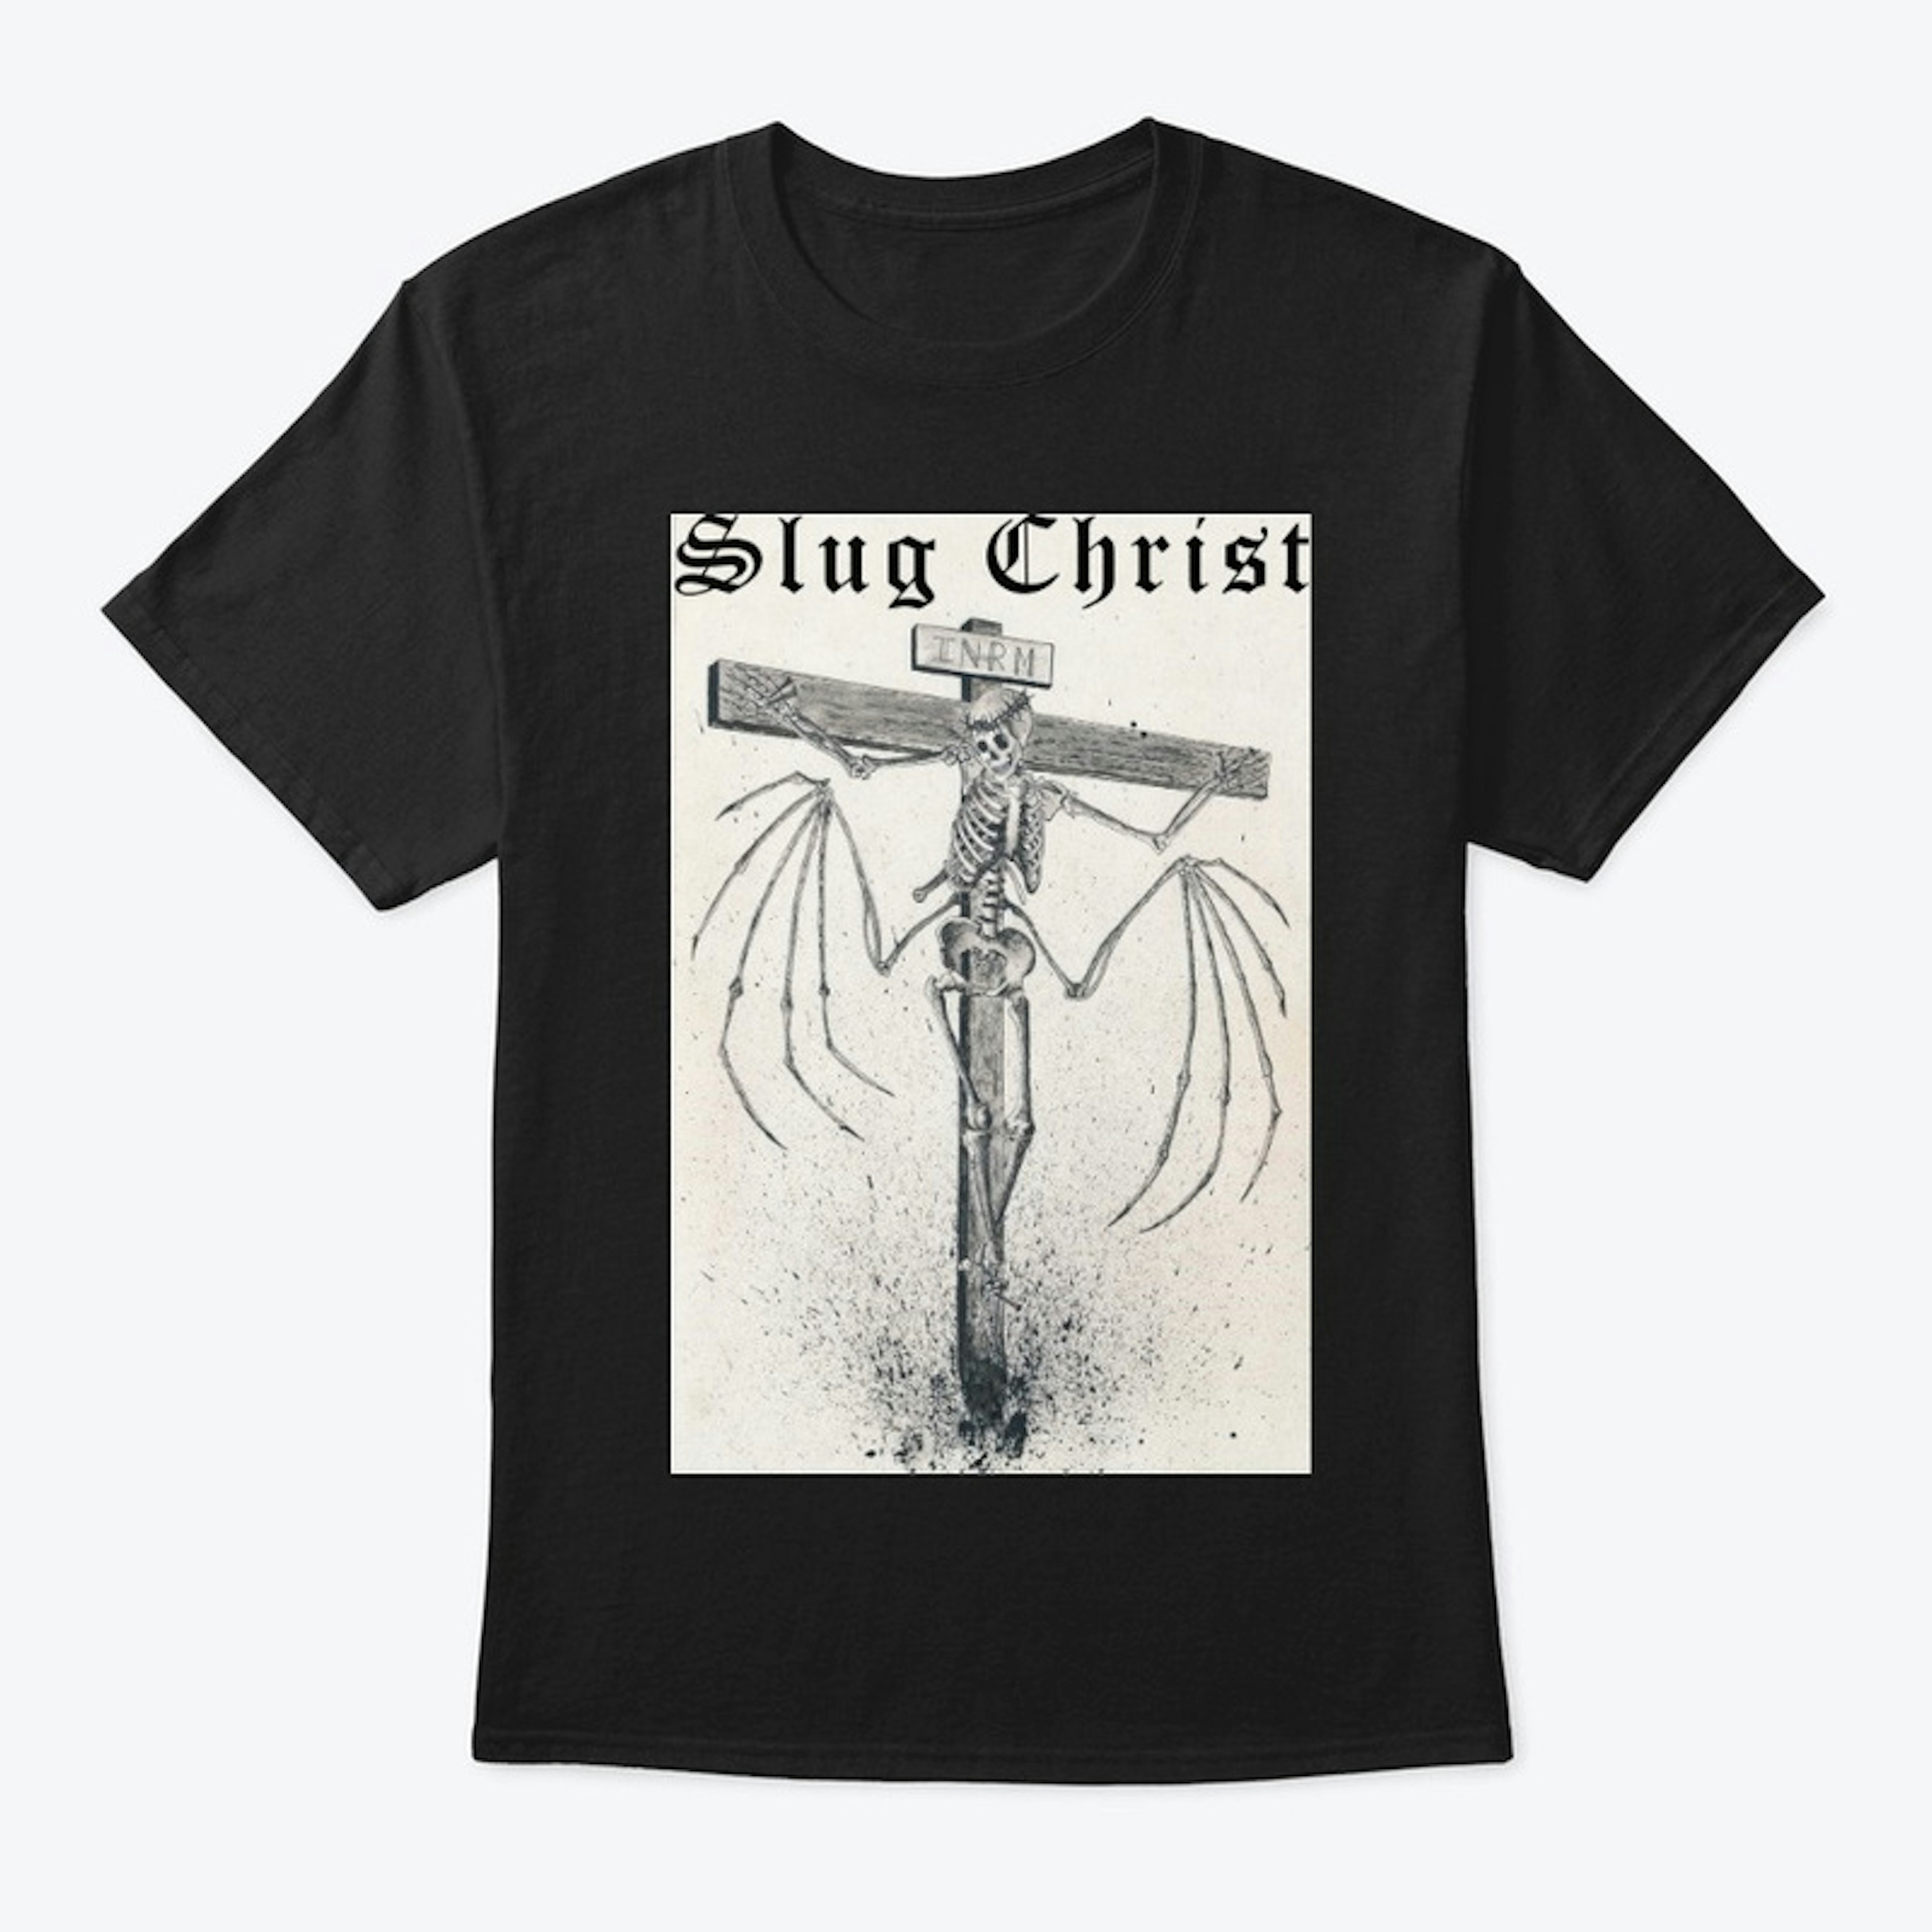 Slug Christ "Antichristos" T-Shirt